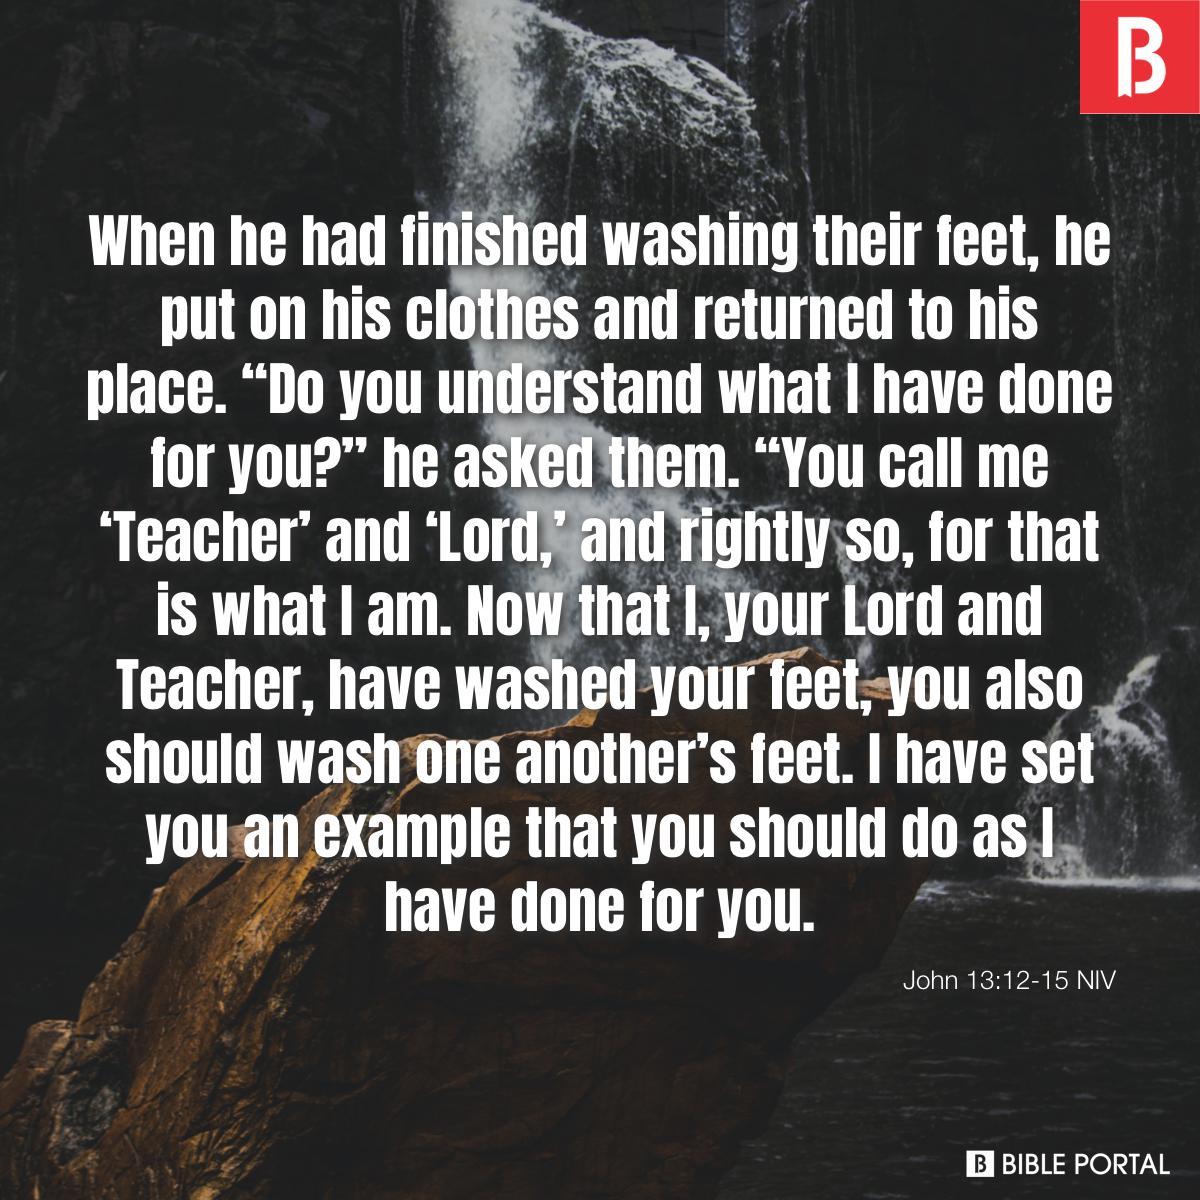 John 13:12-15 NIV